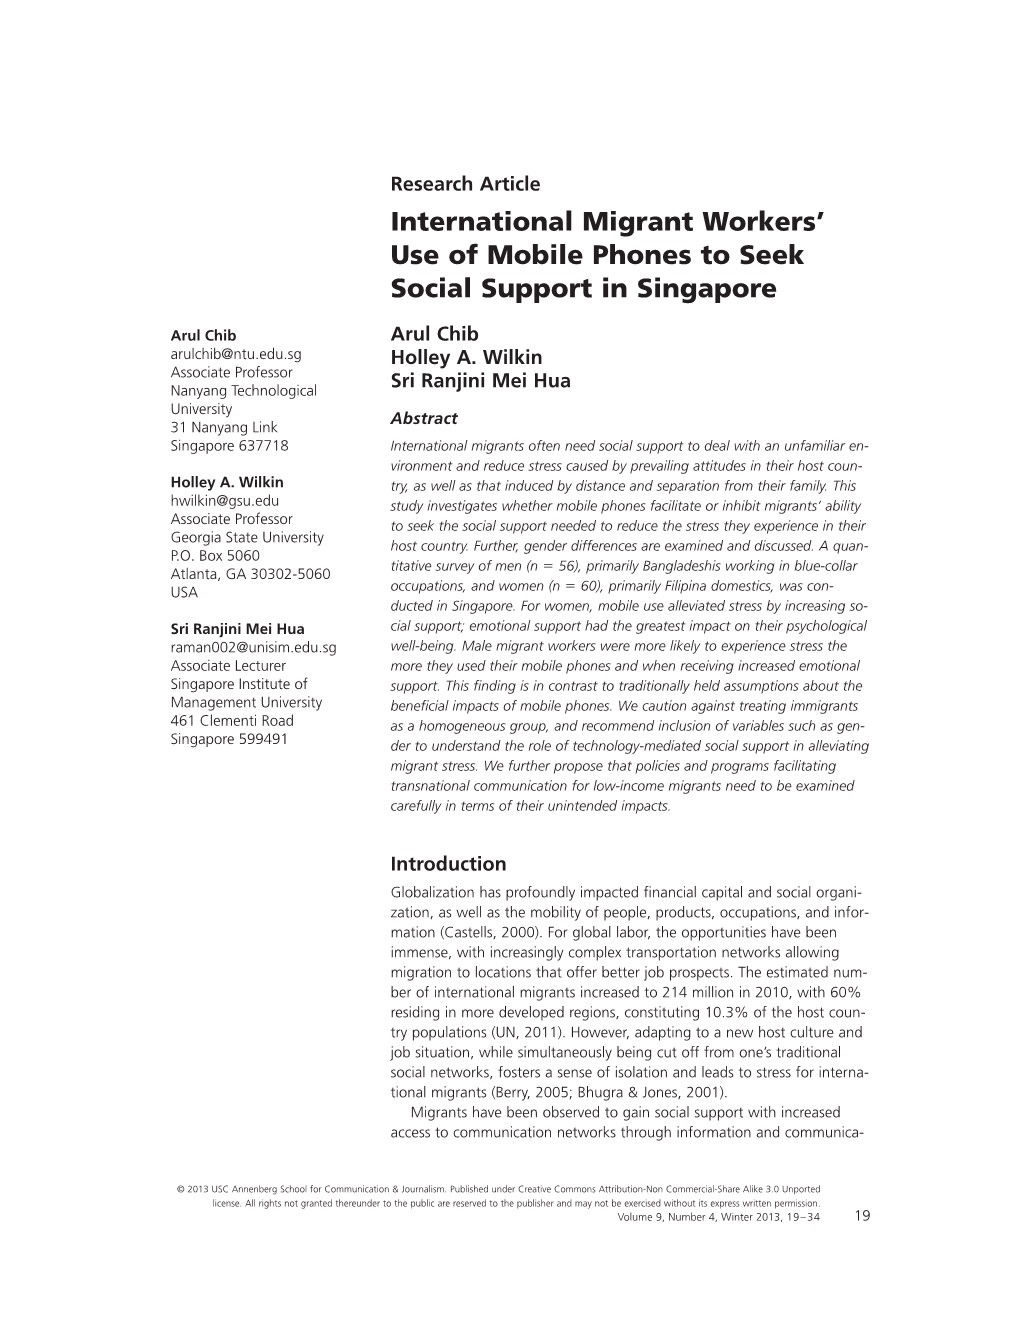 International Migrant Workers' Use of Mobile Phones to Seek Social